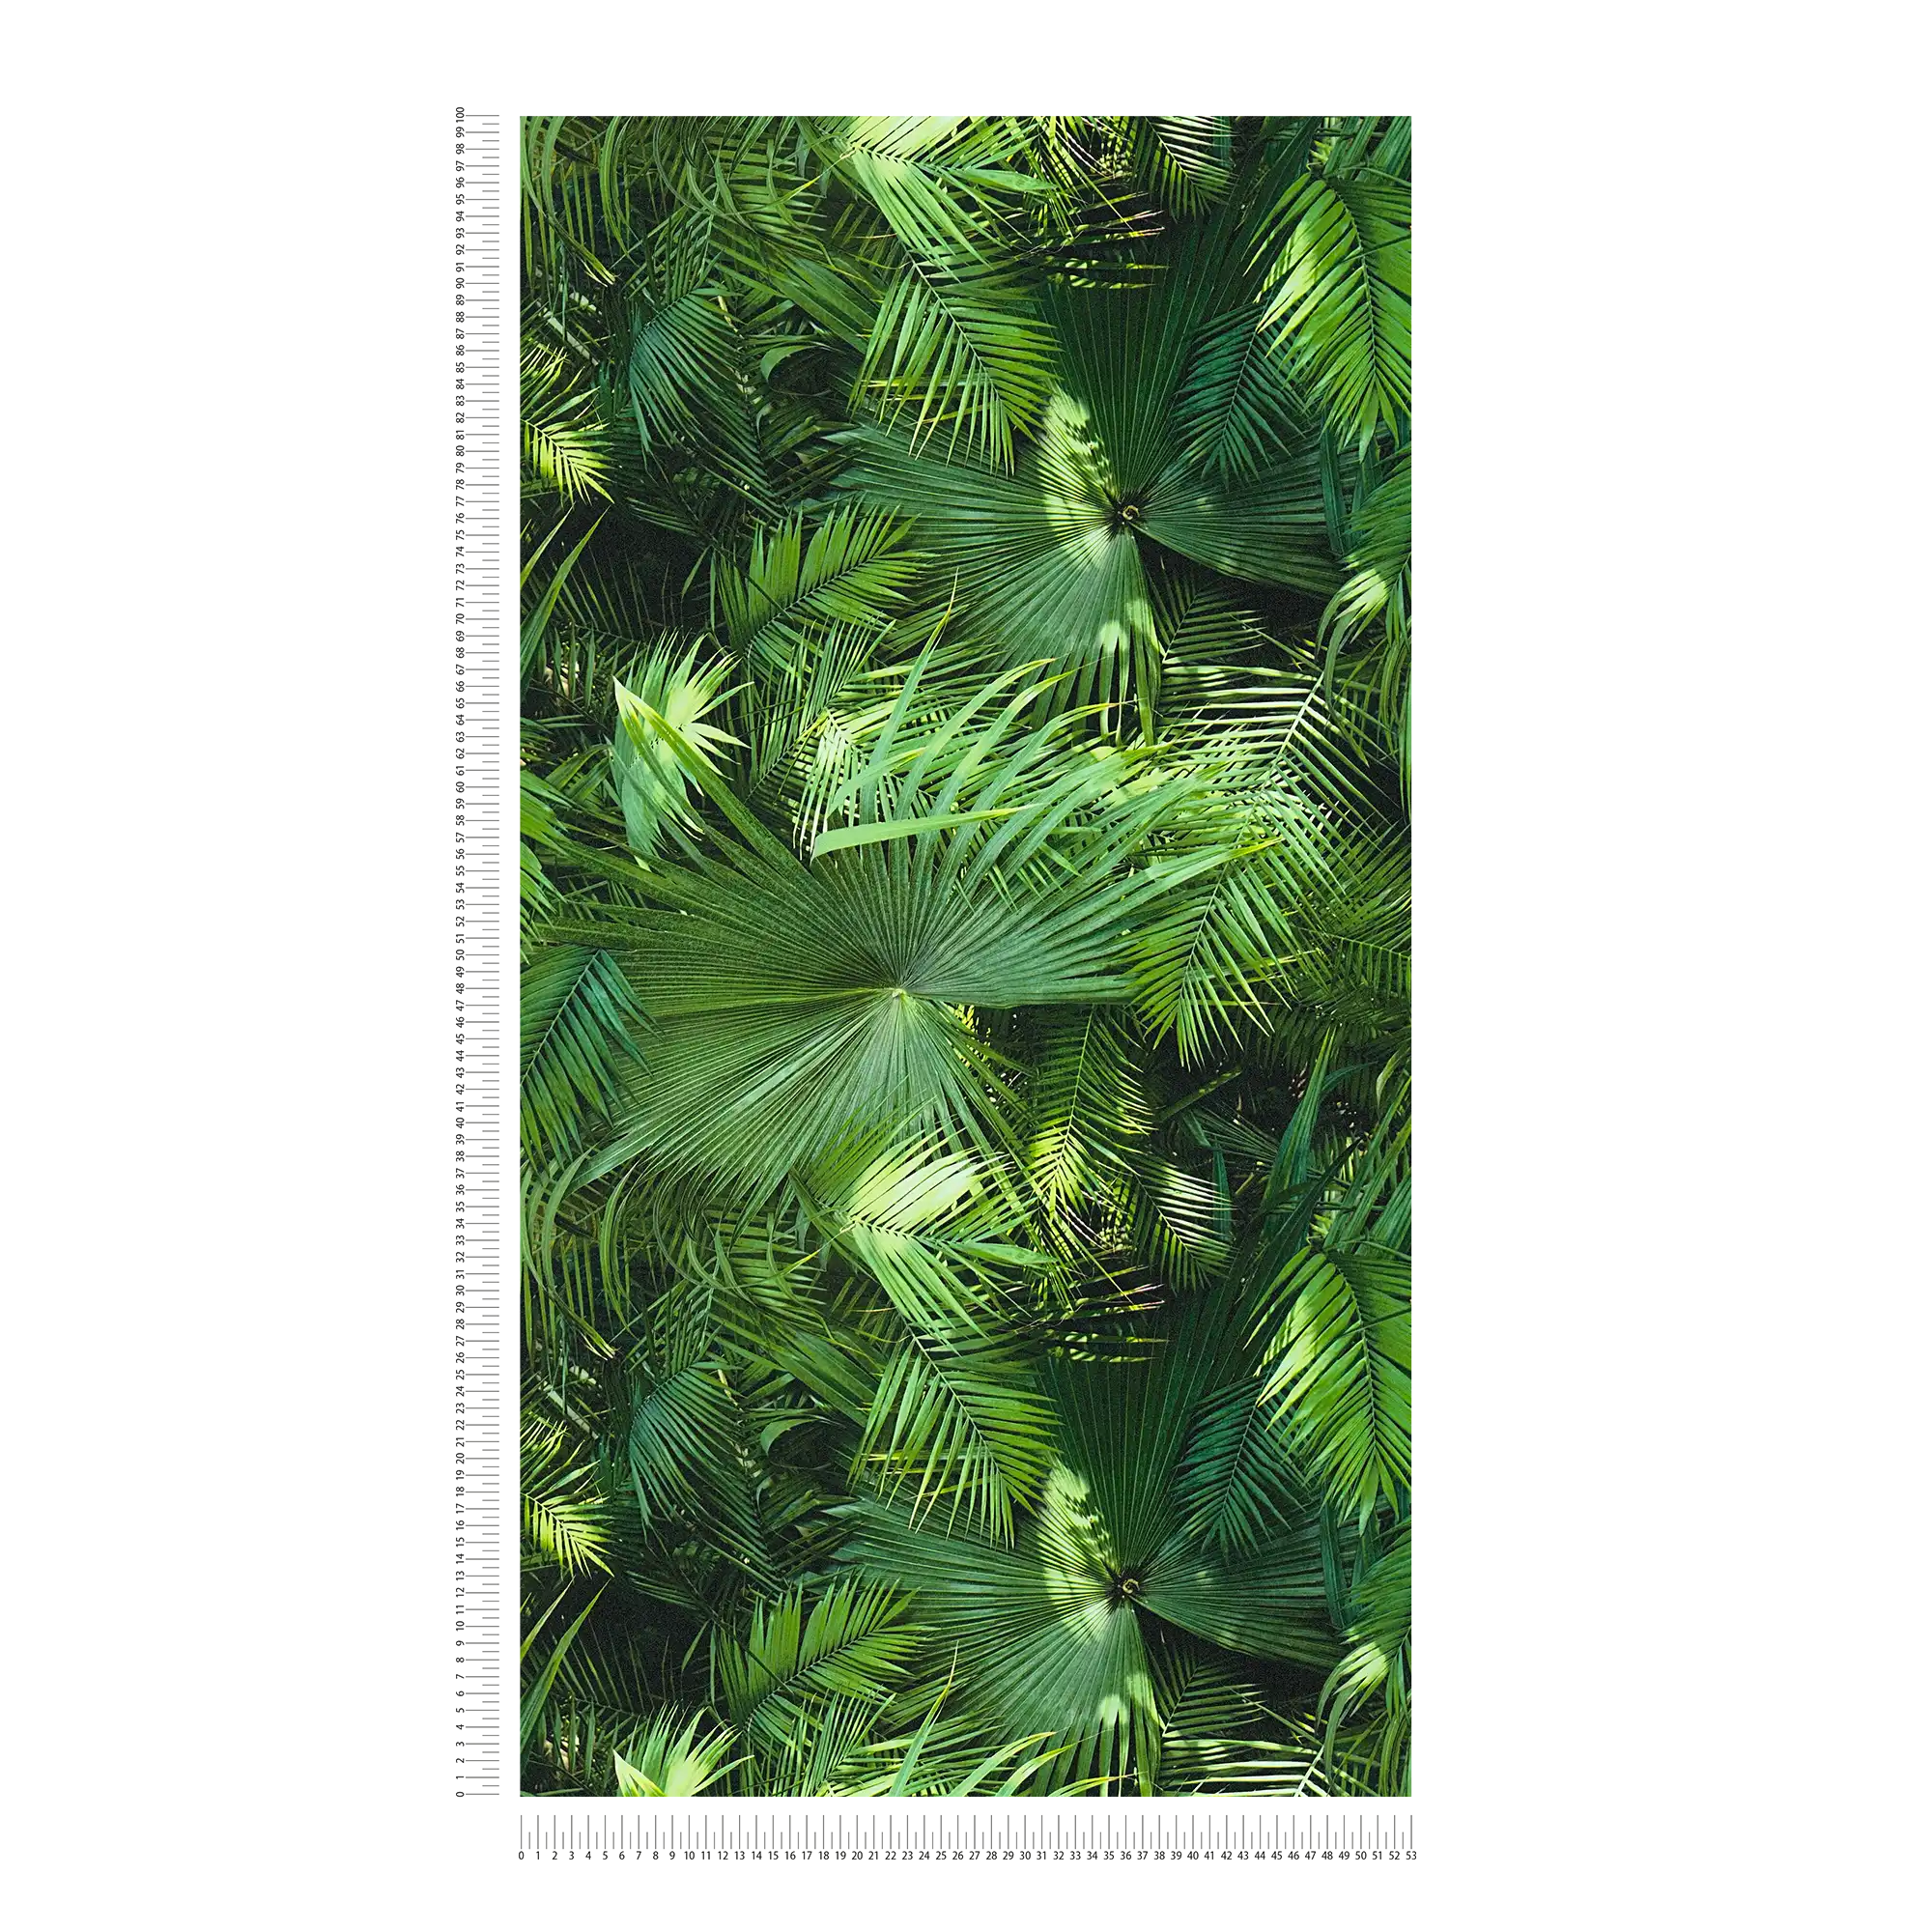             Patrón de hojas con aspecto selvático, óptica de helecho - óptica de helecho
        